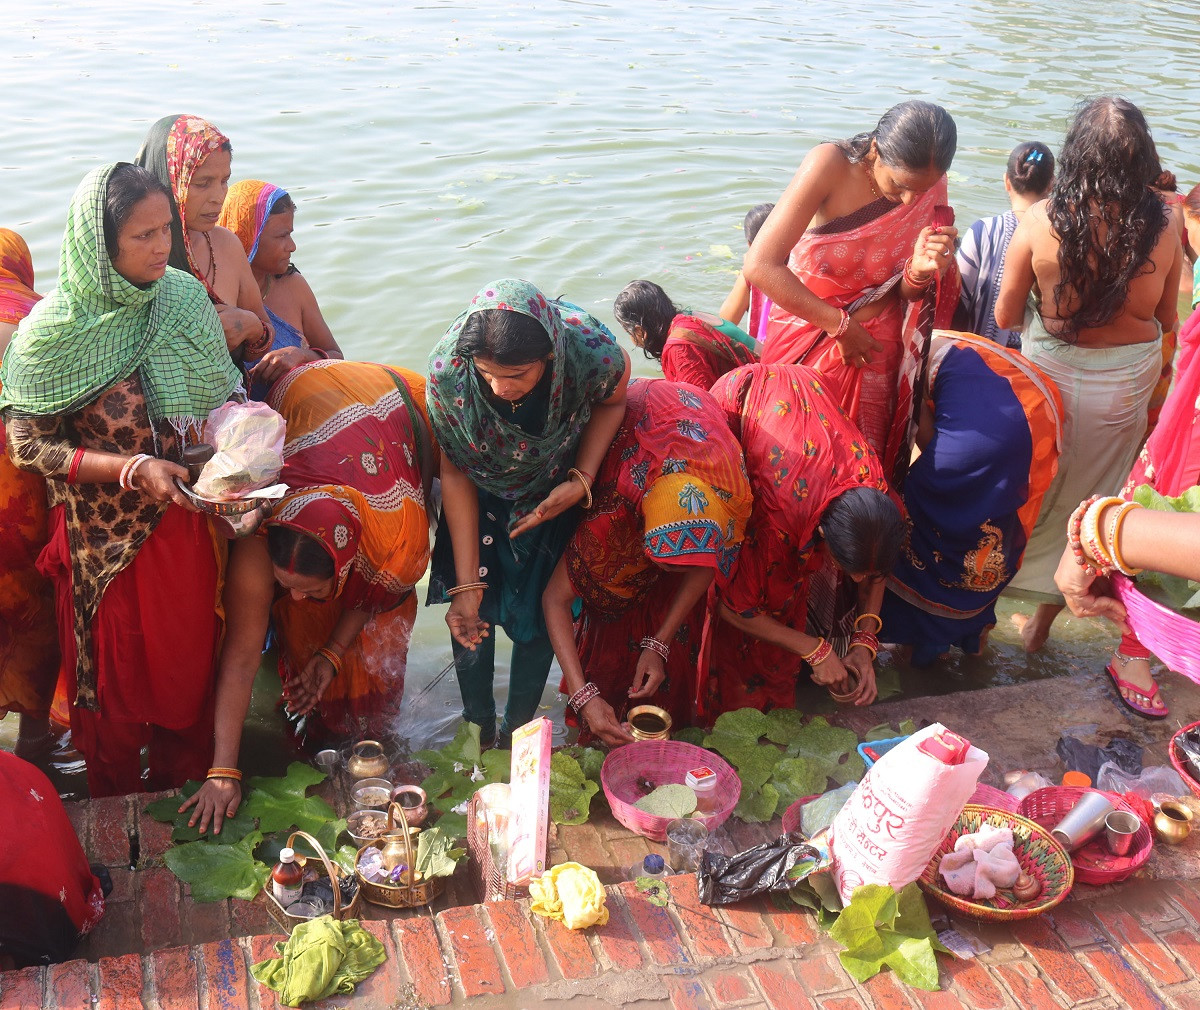 मैथिली समुदायका महिलाले मनाउने जितीयापर्वअन्तर्गत व्रतालुद्वारा शुक्रबार जनकपुरधामको गङ्गासागरमा स्नानगरी पुजा बिधि (तेलखरि विधि) गरिँदै। तस्वीर: हिमांशु चौधरी